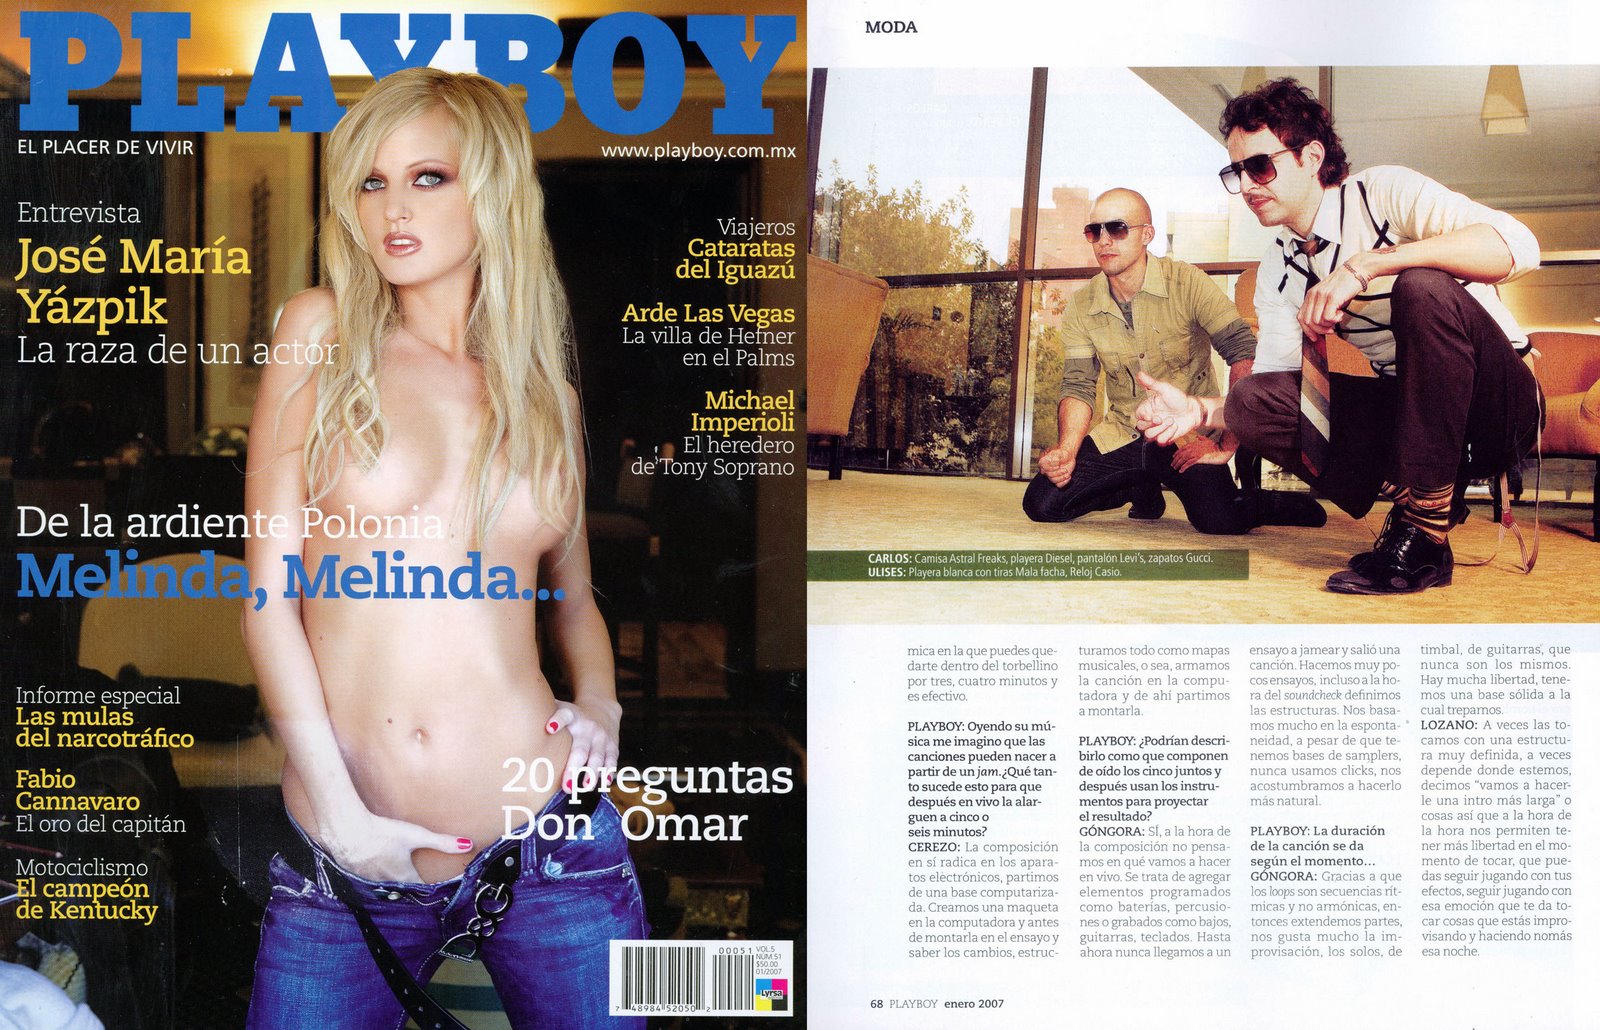 [Playboy+Kinky+copia.jpg]